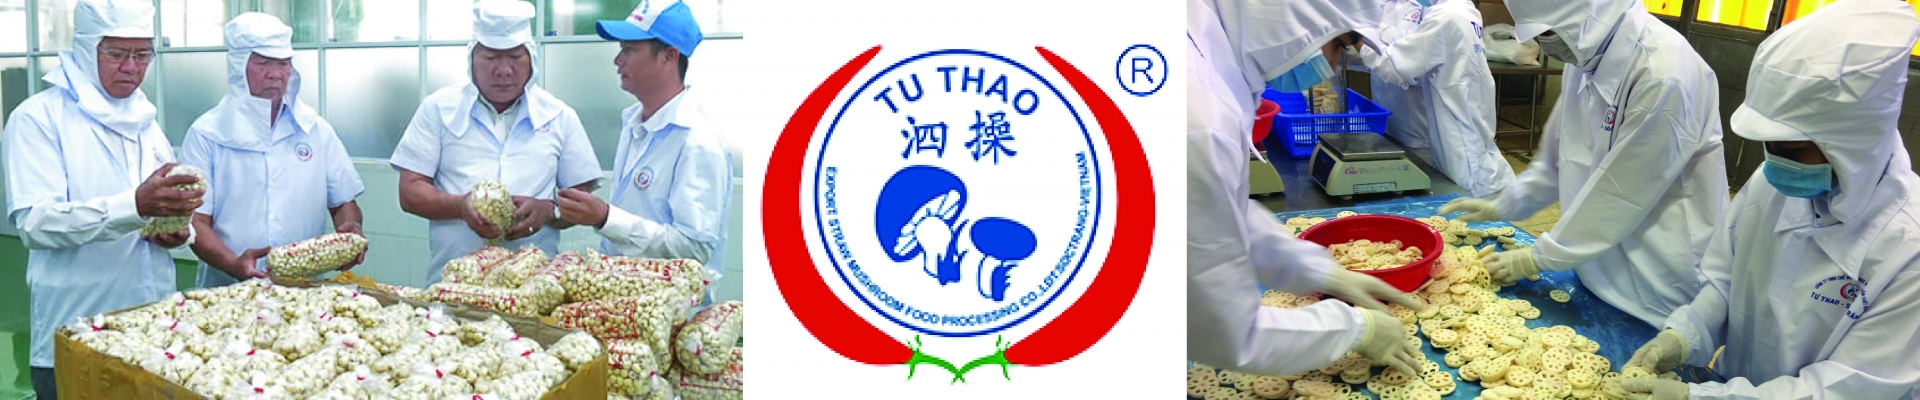 Công ty TNHH Chế biến thực phẩm nấm xuất khẩu Tư Thao Sóc Trăng